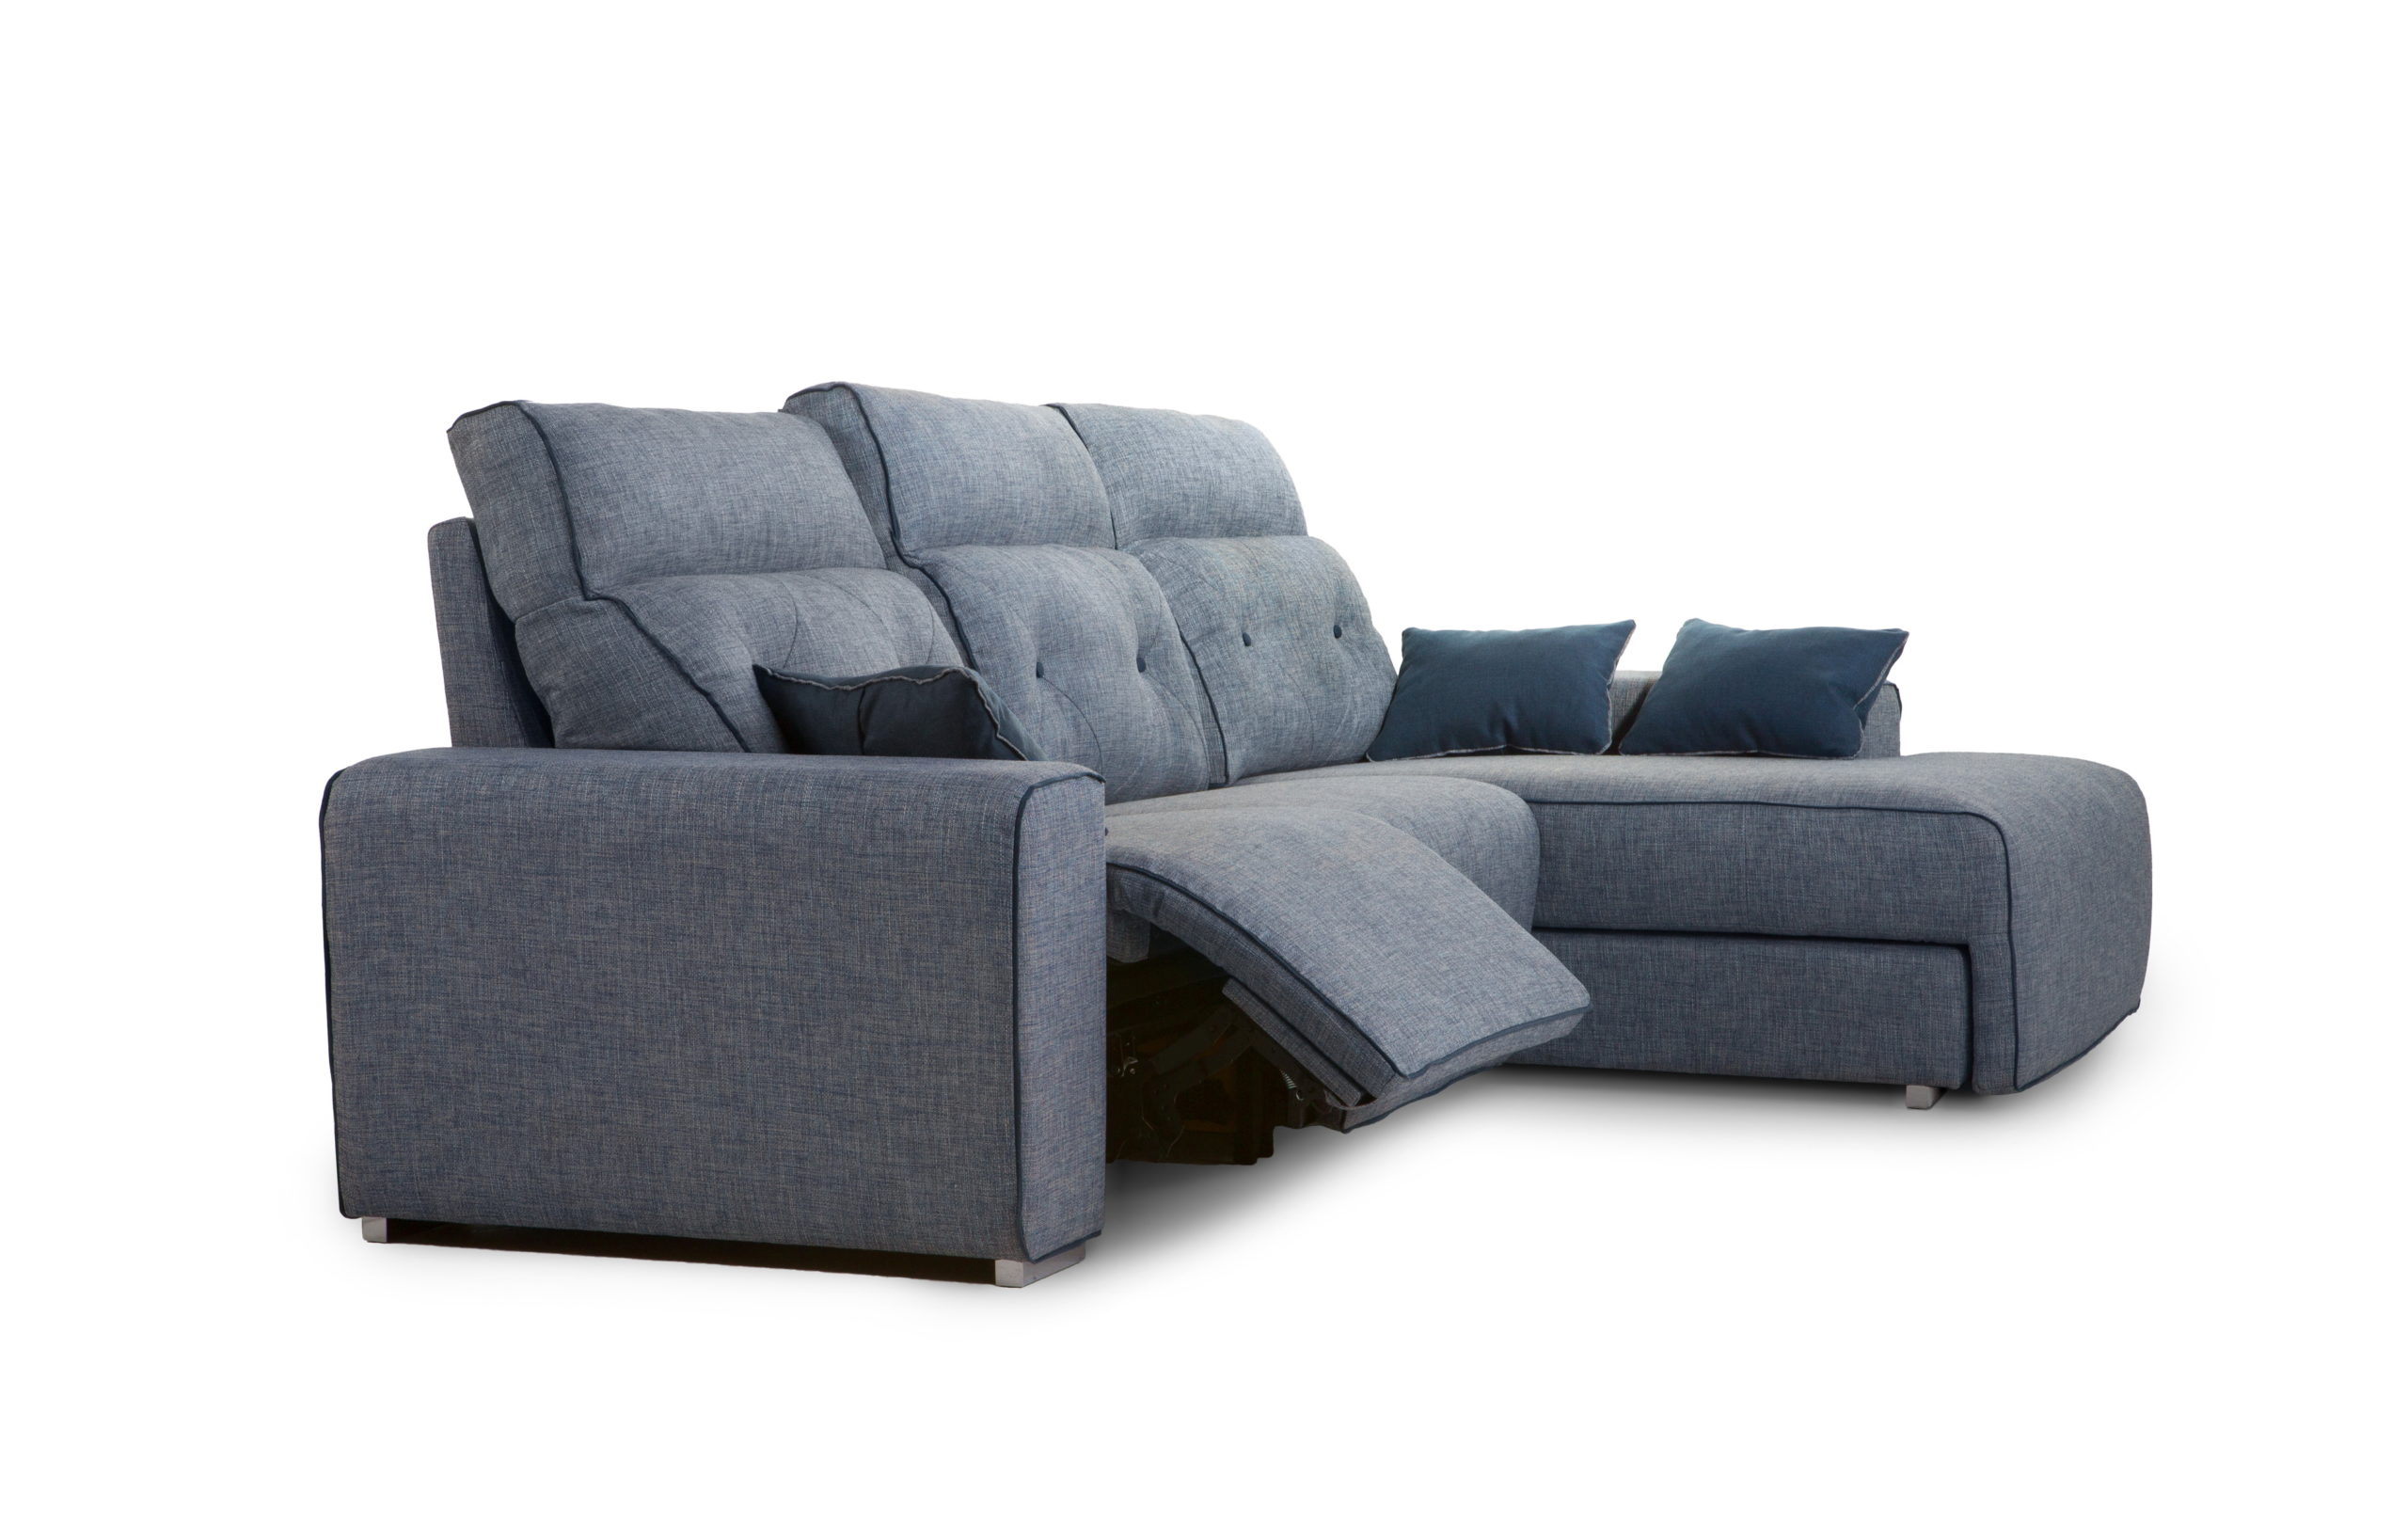 NATIVA sofá modular asientos relax o fijos by Reyes Ordoñez SOFÁ CHAISE-LONGUE Nativa sofá 001.1 de venta en Muebles ANTOÑÁN León